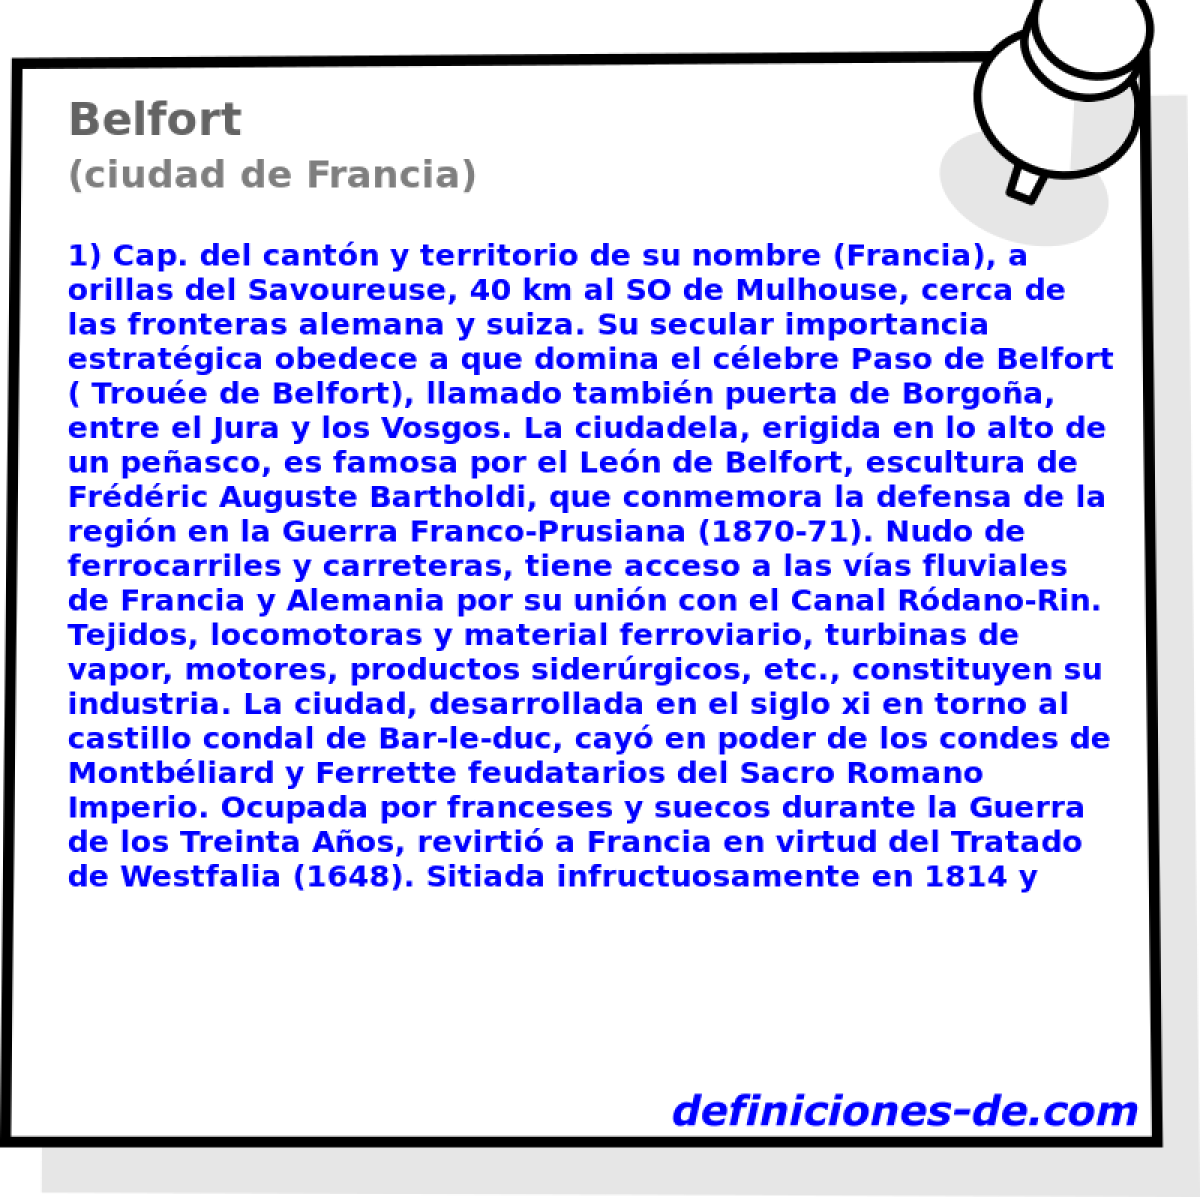 Belfort (ciudad de Francia)